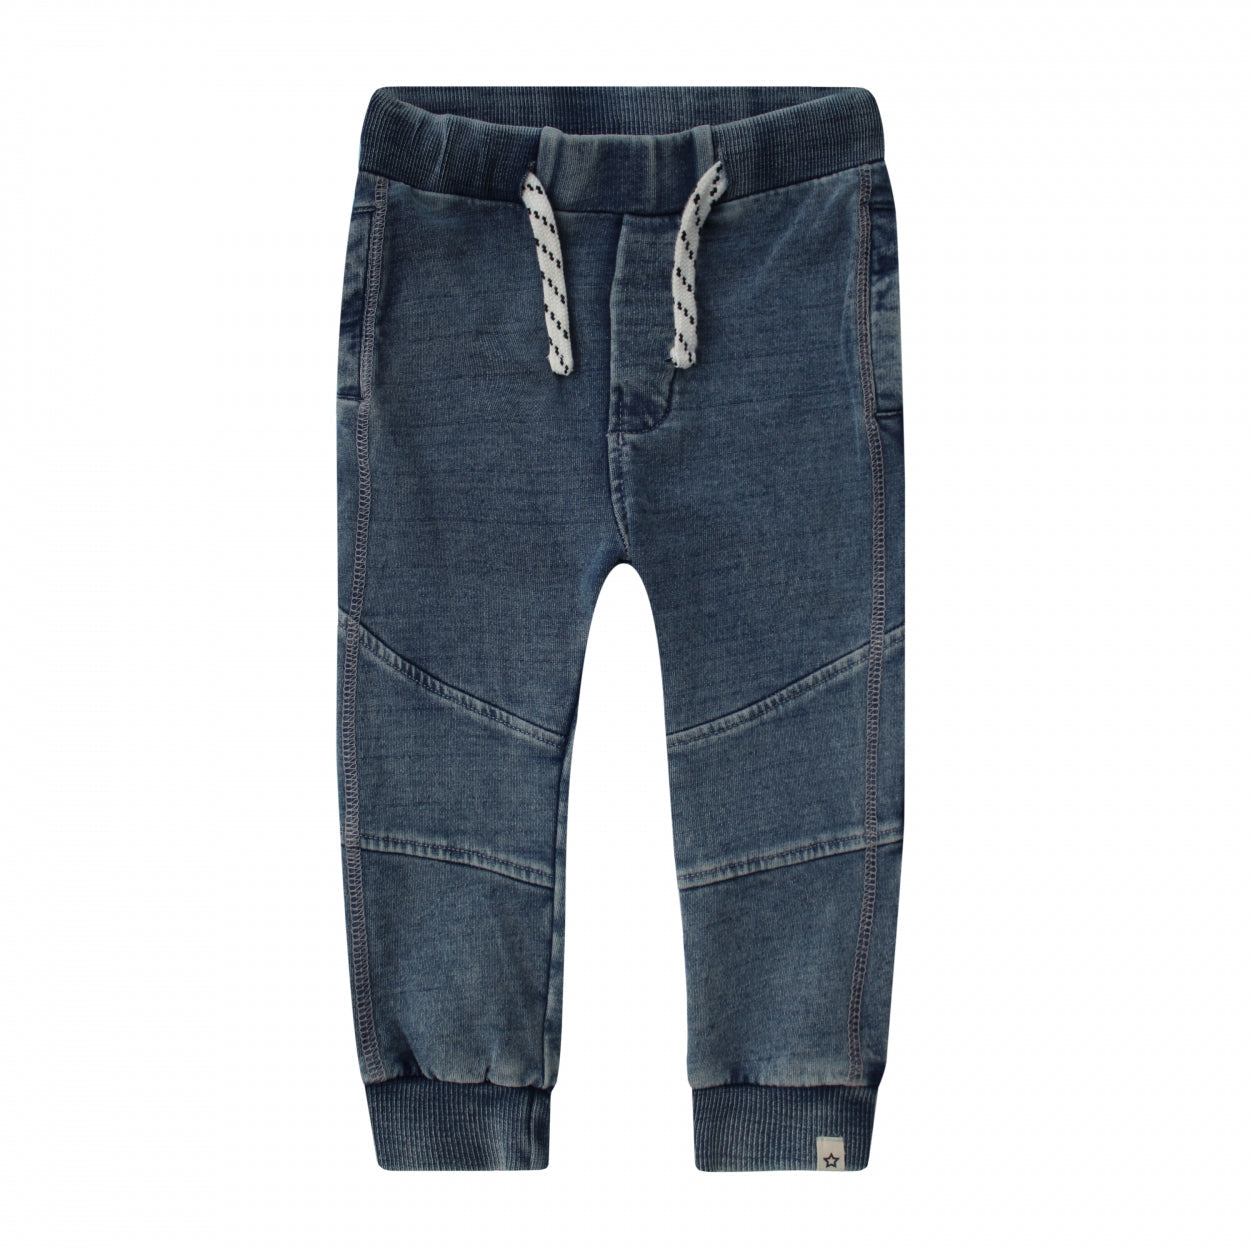 Jongens Pants Knitted Denim | Dexter van Your Wishes in de kleur Denim Medium Blue in maat 134/140.